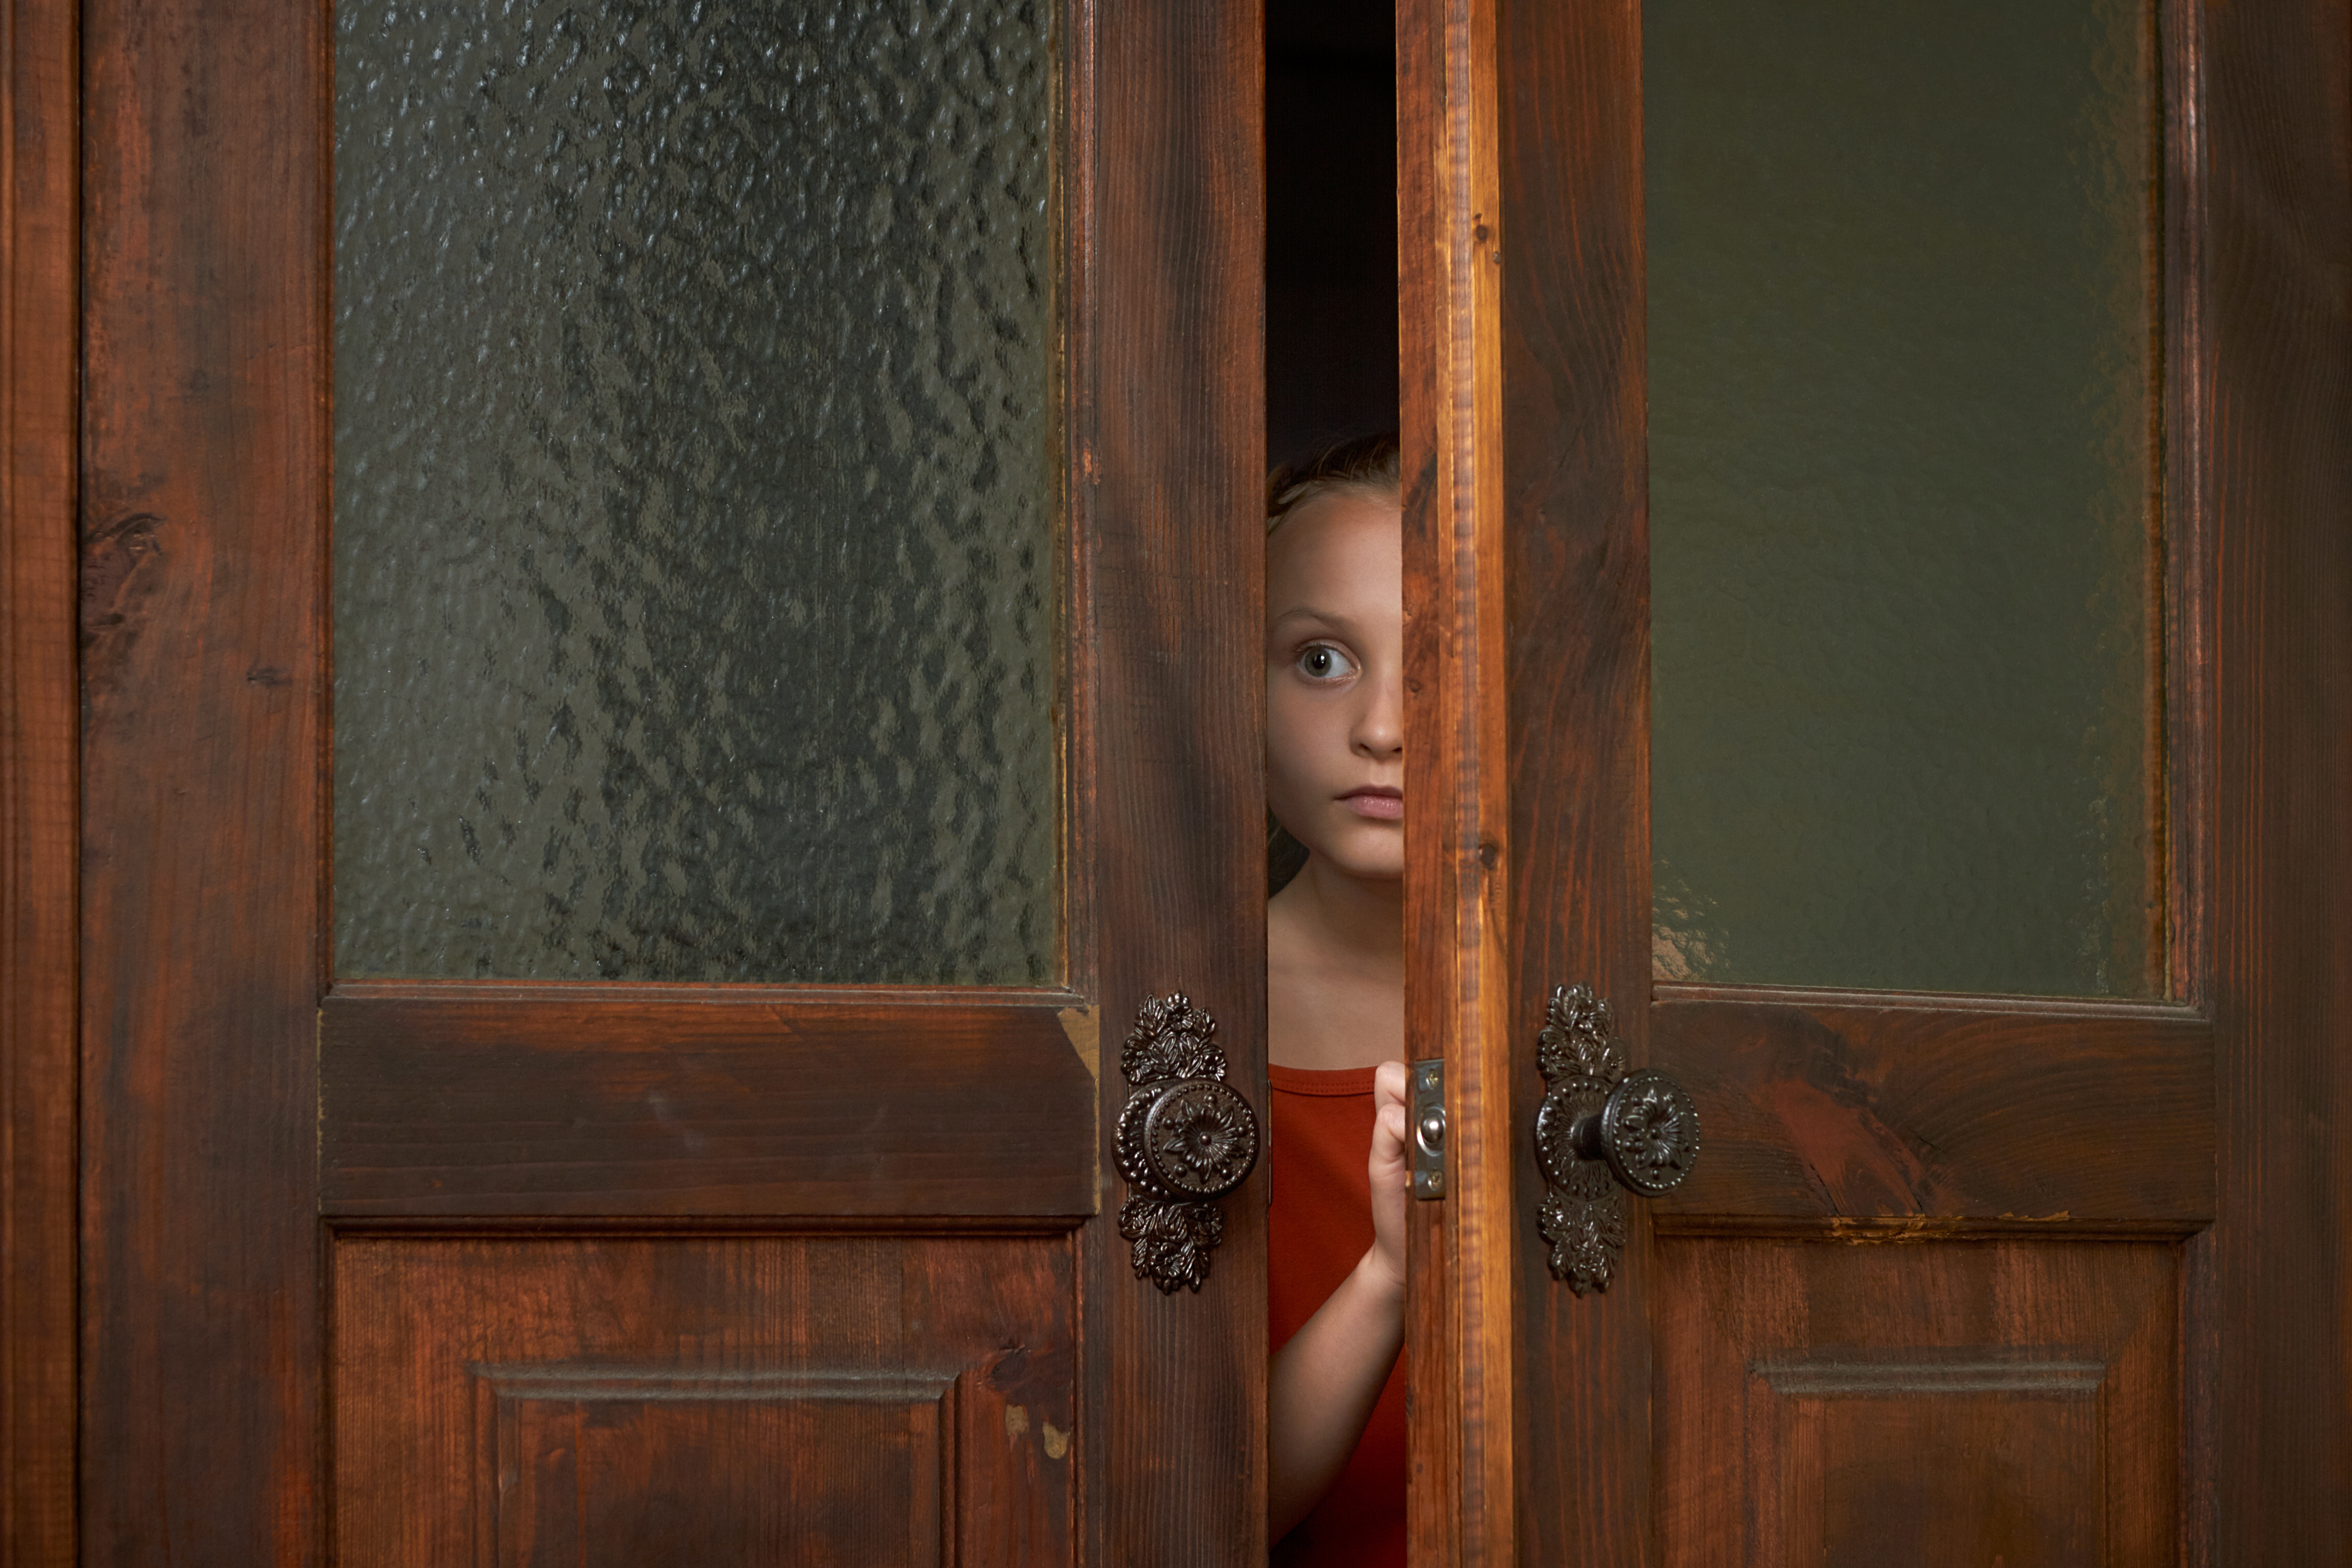 A girl peeking through a door | Source: Shutterstock